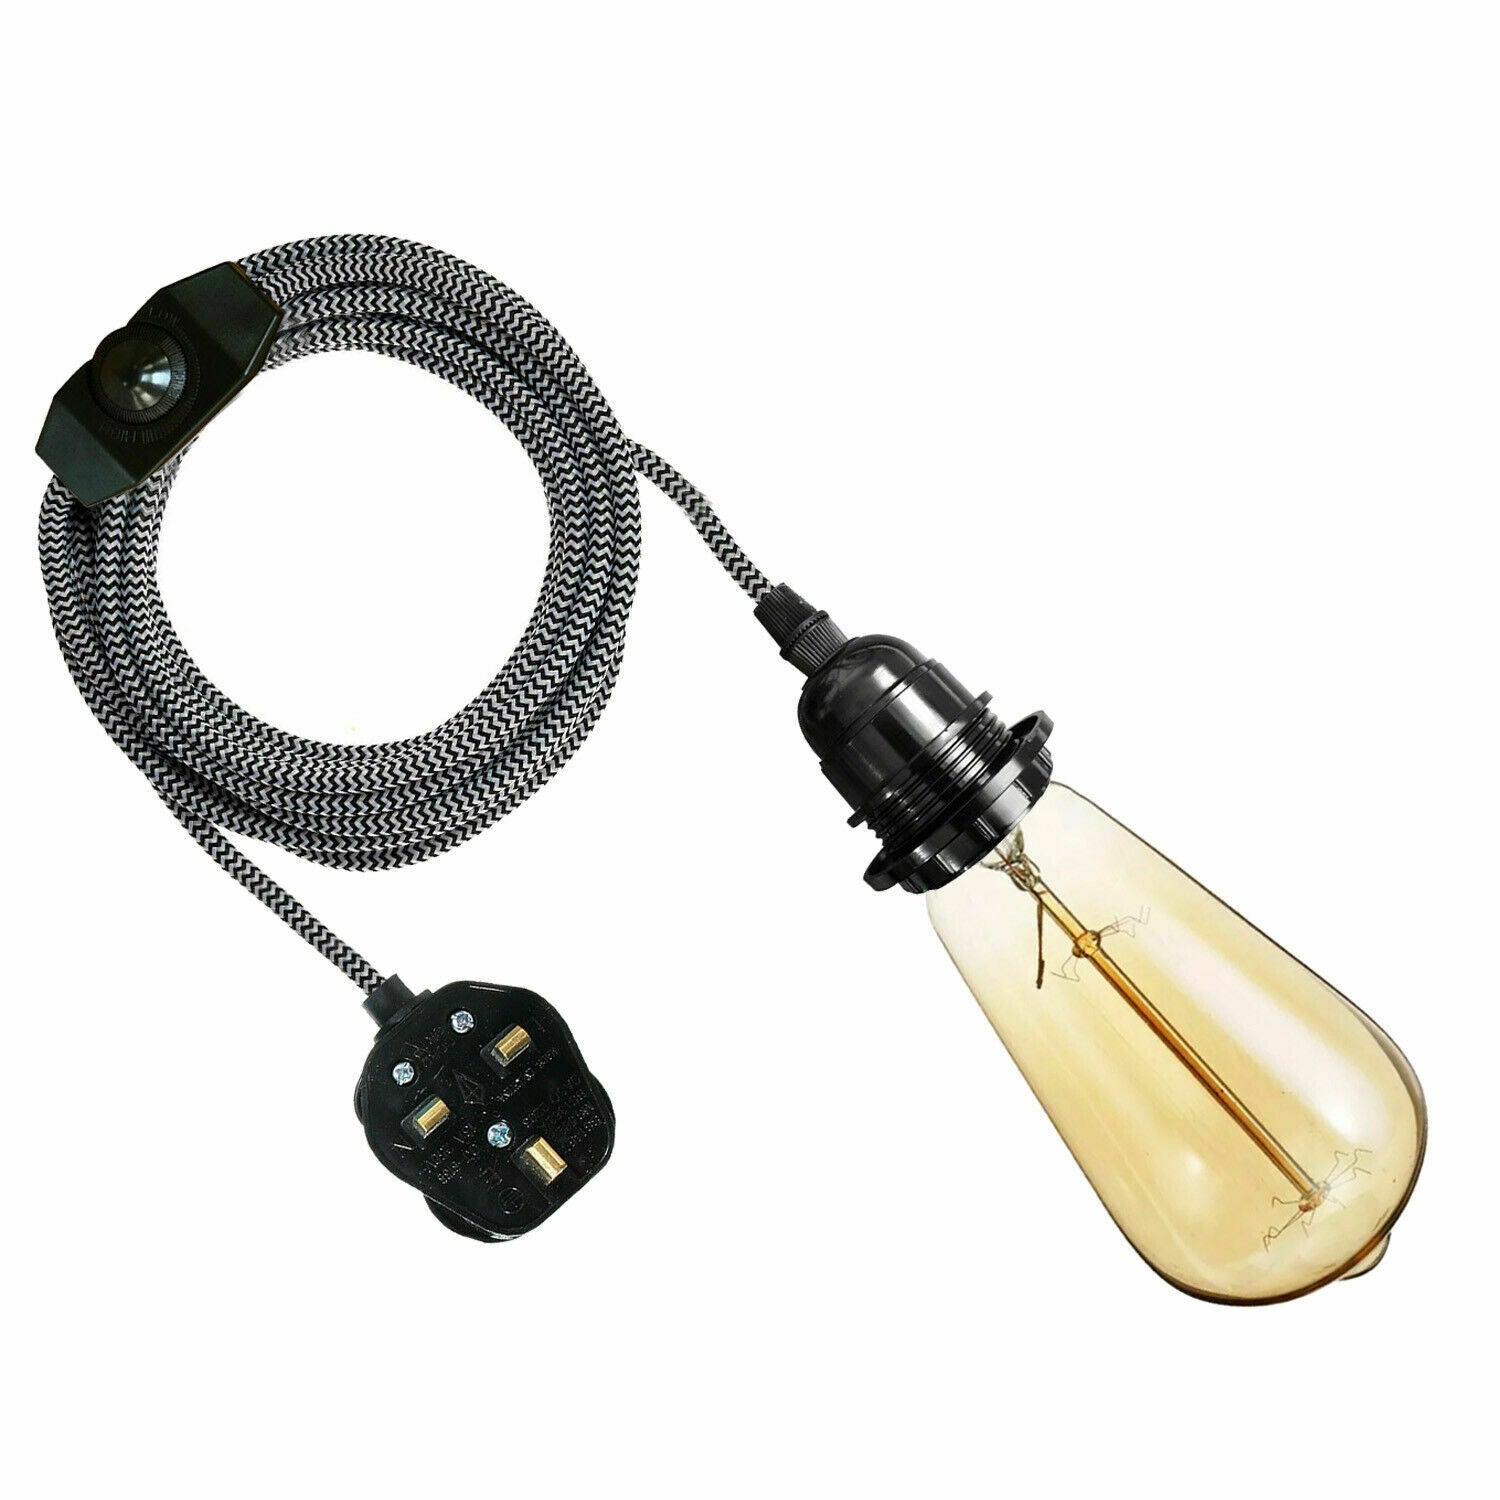 4M Fabric Flex Cable UK Black & white colour Plug In Pendant Lamp Light Set E27 Bulb Holder+ switch~3751 - LEDSone UK Ltd